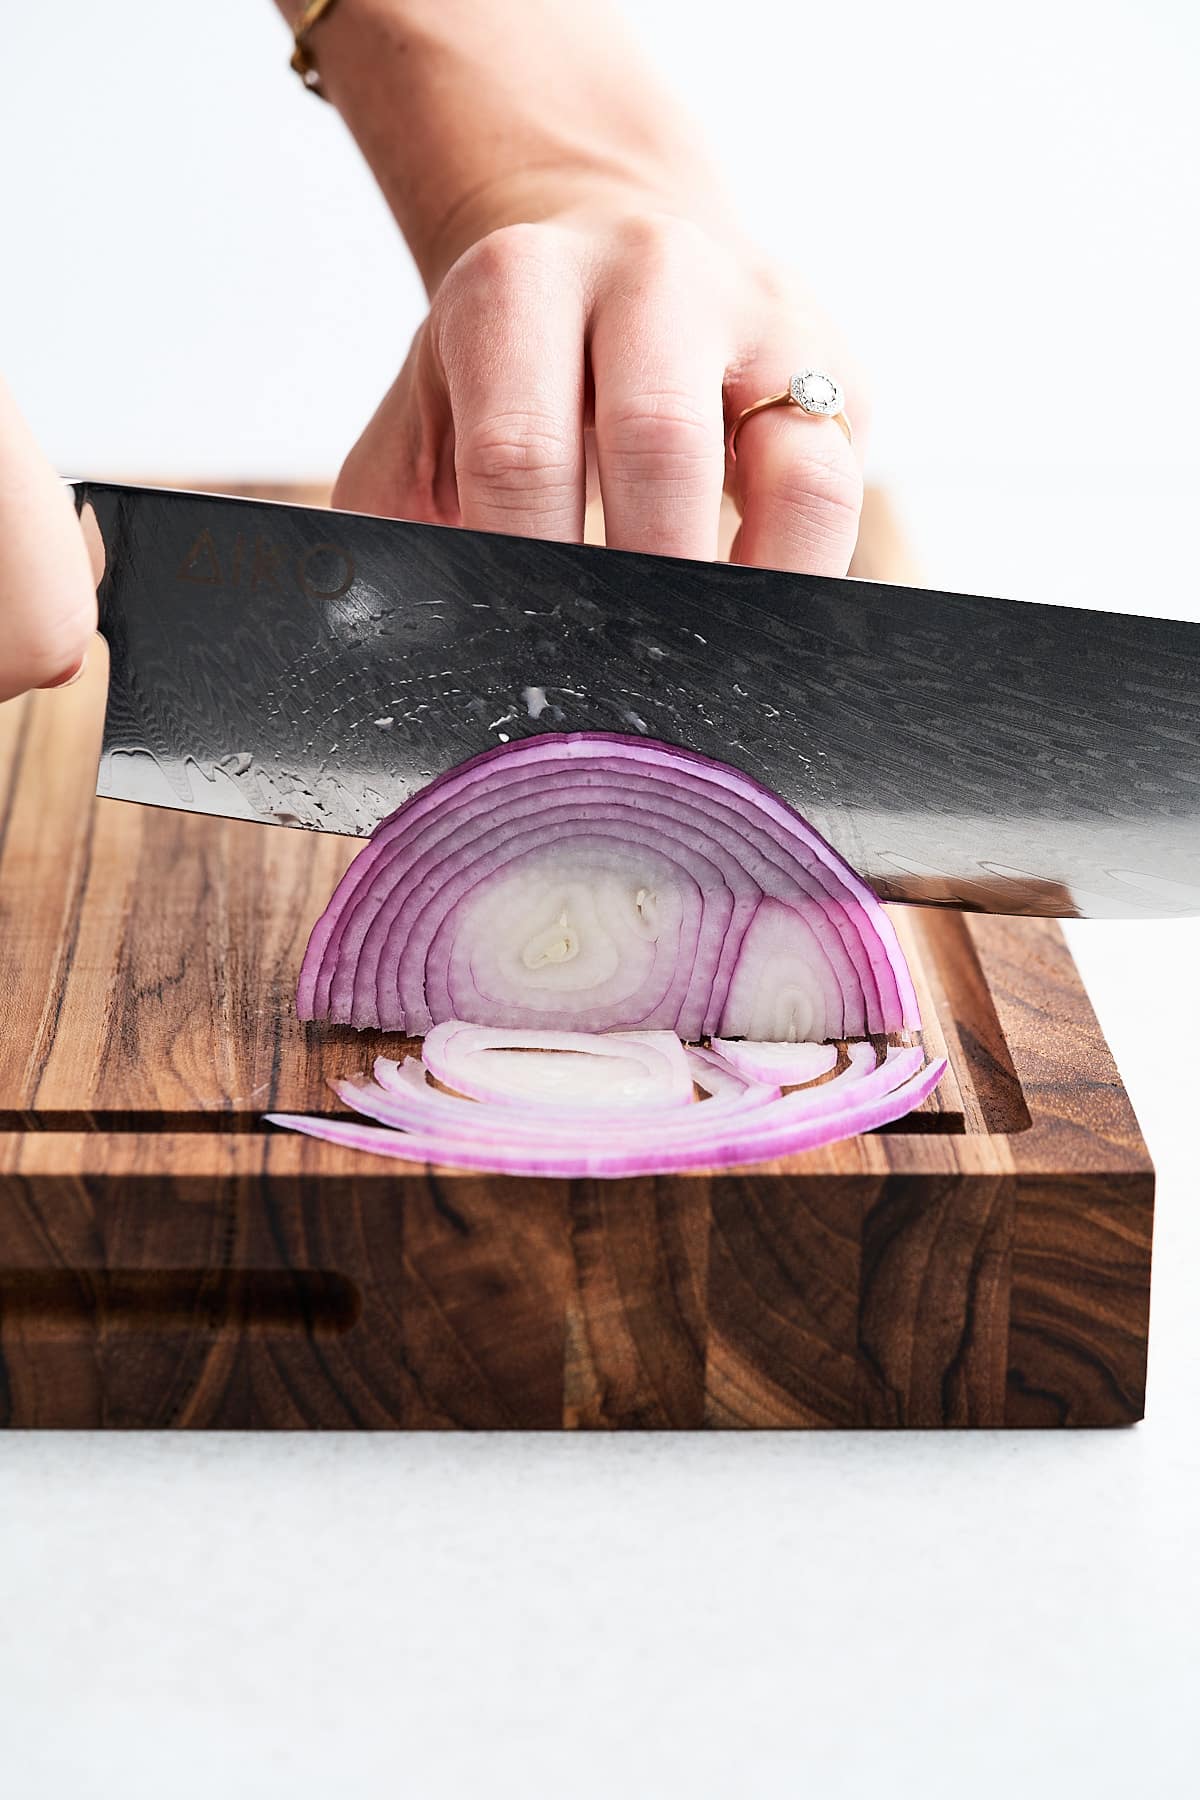 Nakiri knife slicing an onion.